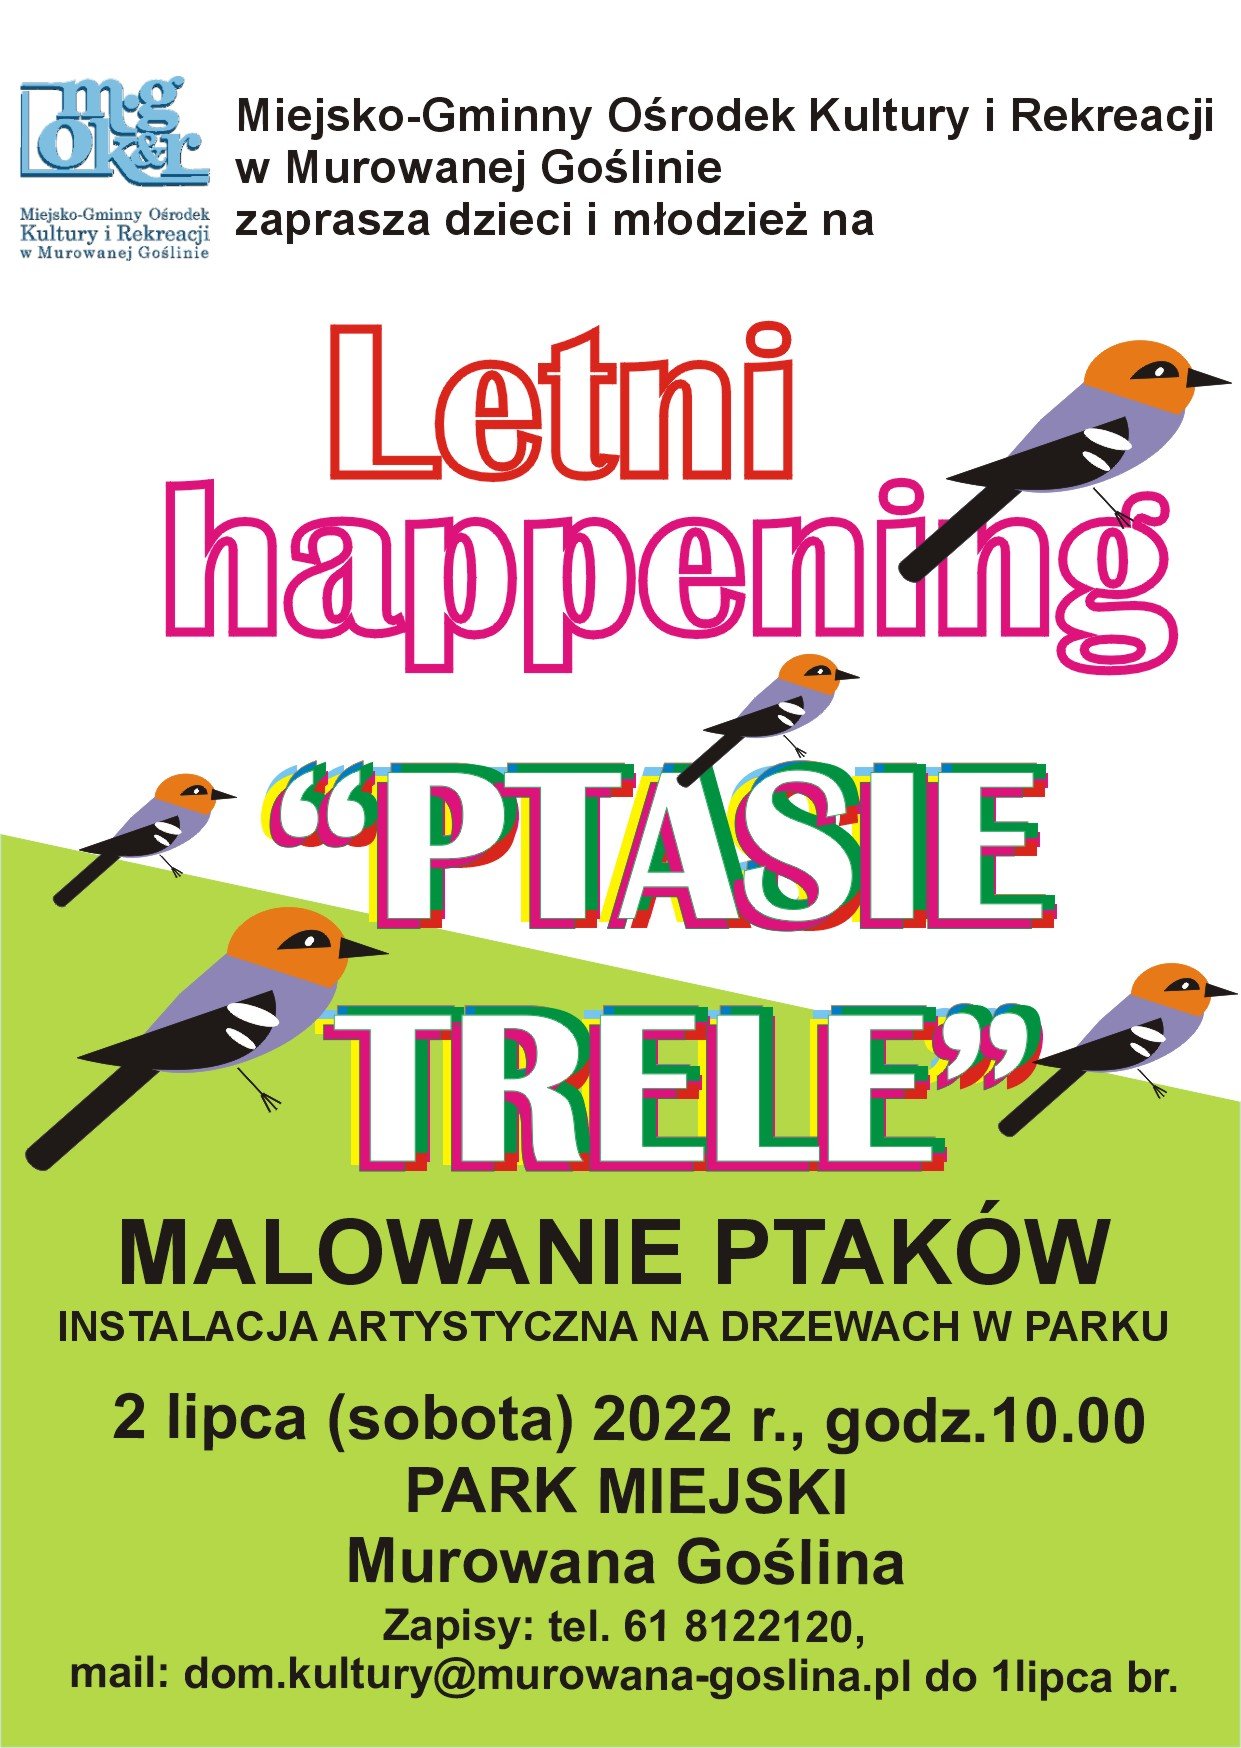 Letni happening "Ptasie trele", Park Miejski 2 lipca sobota, warsztaty artystyczne dla dzieci, obrazek przedstawiający ptaszka